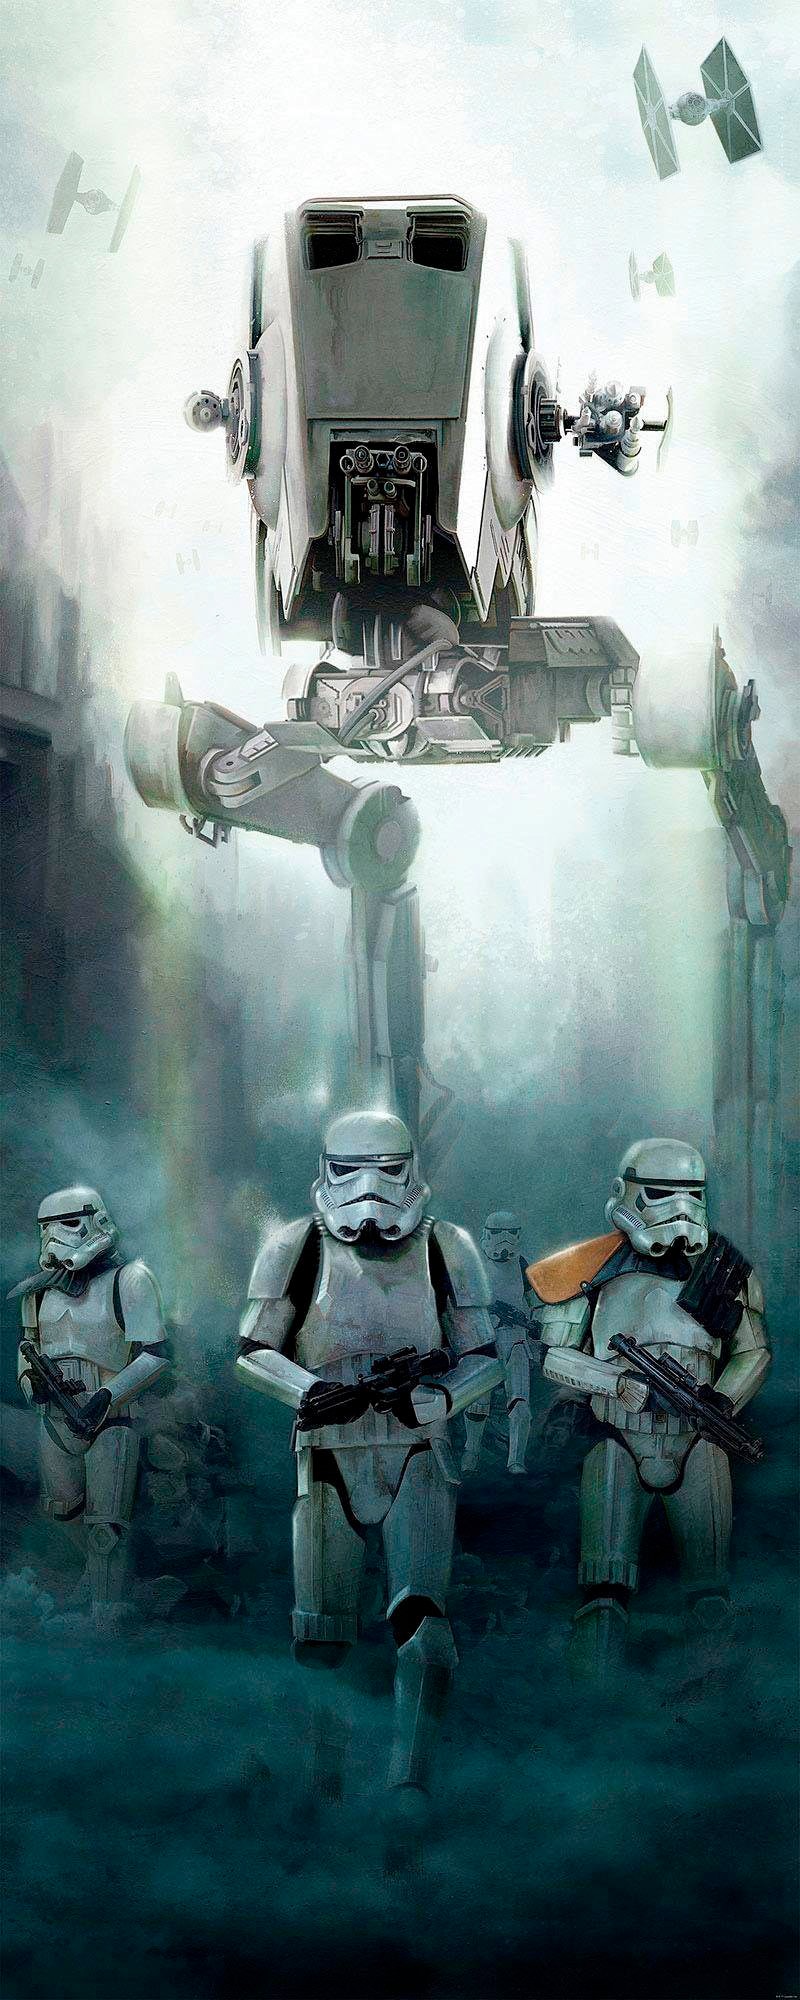 Komar Vliestapete »Star Wars Imperial Forces«, 100x250 cm (Breite x Höhe), Vliestapete, 100 cm Bahnbreite